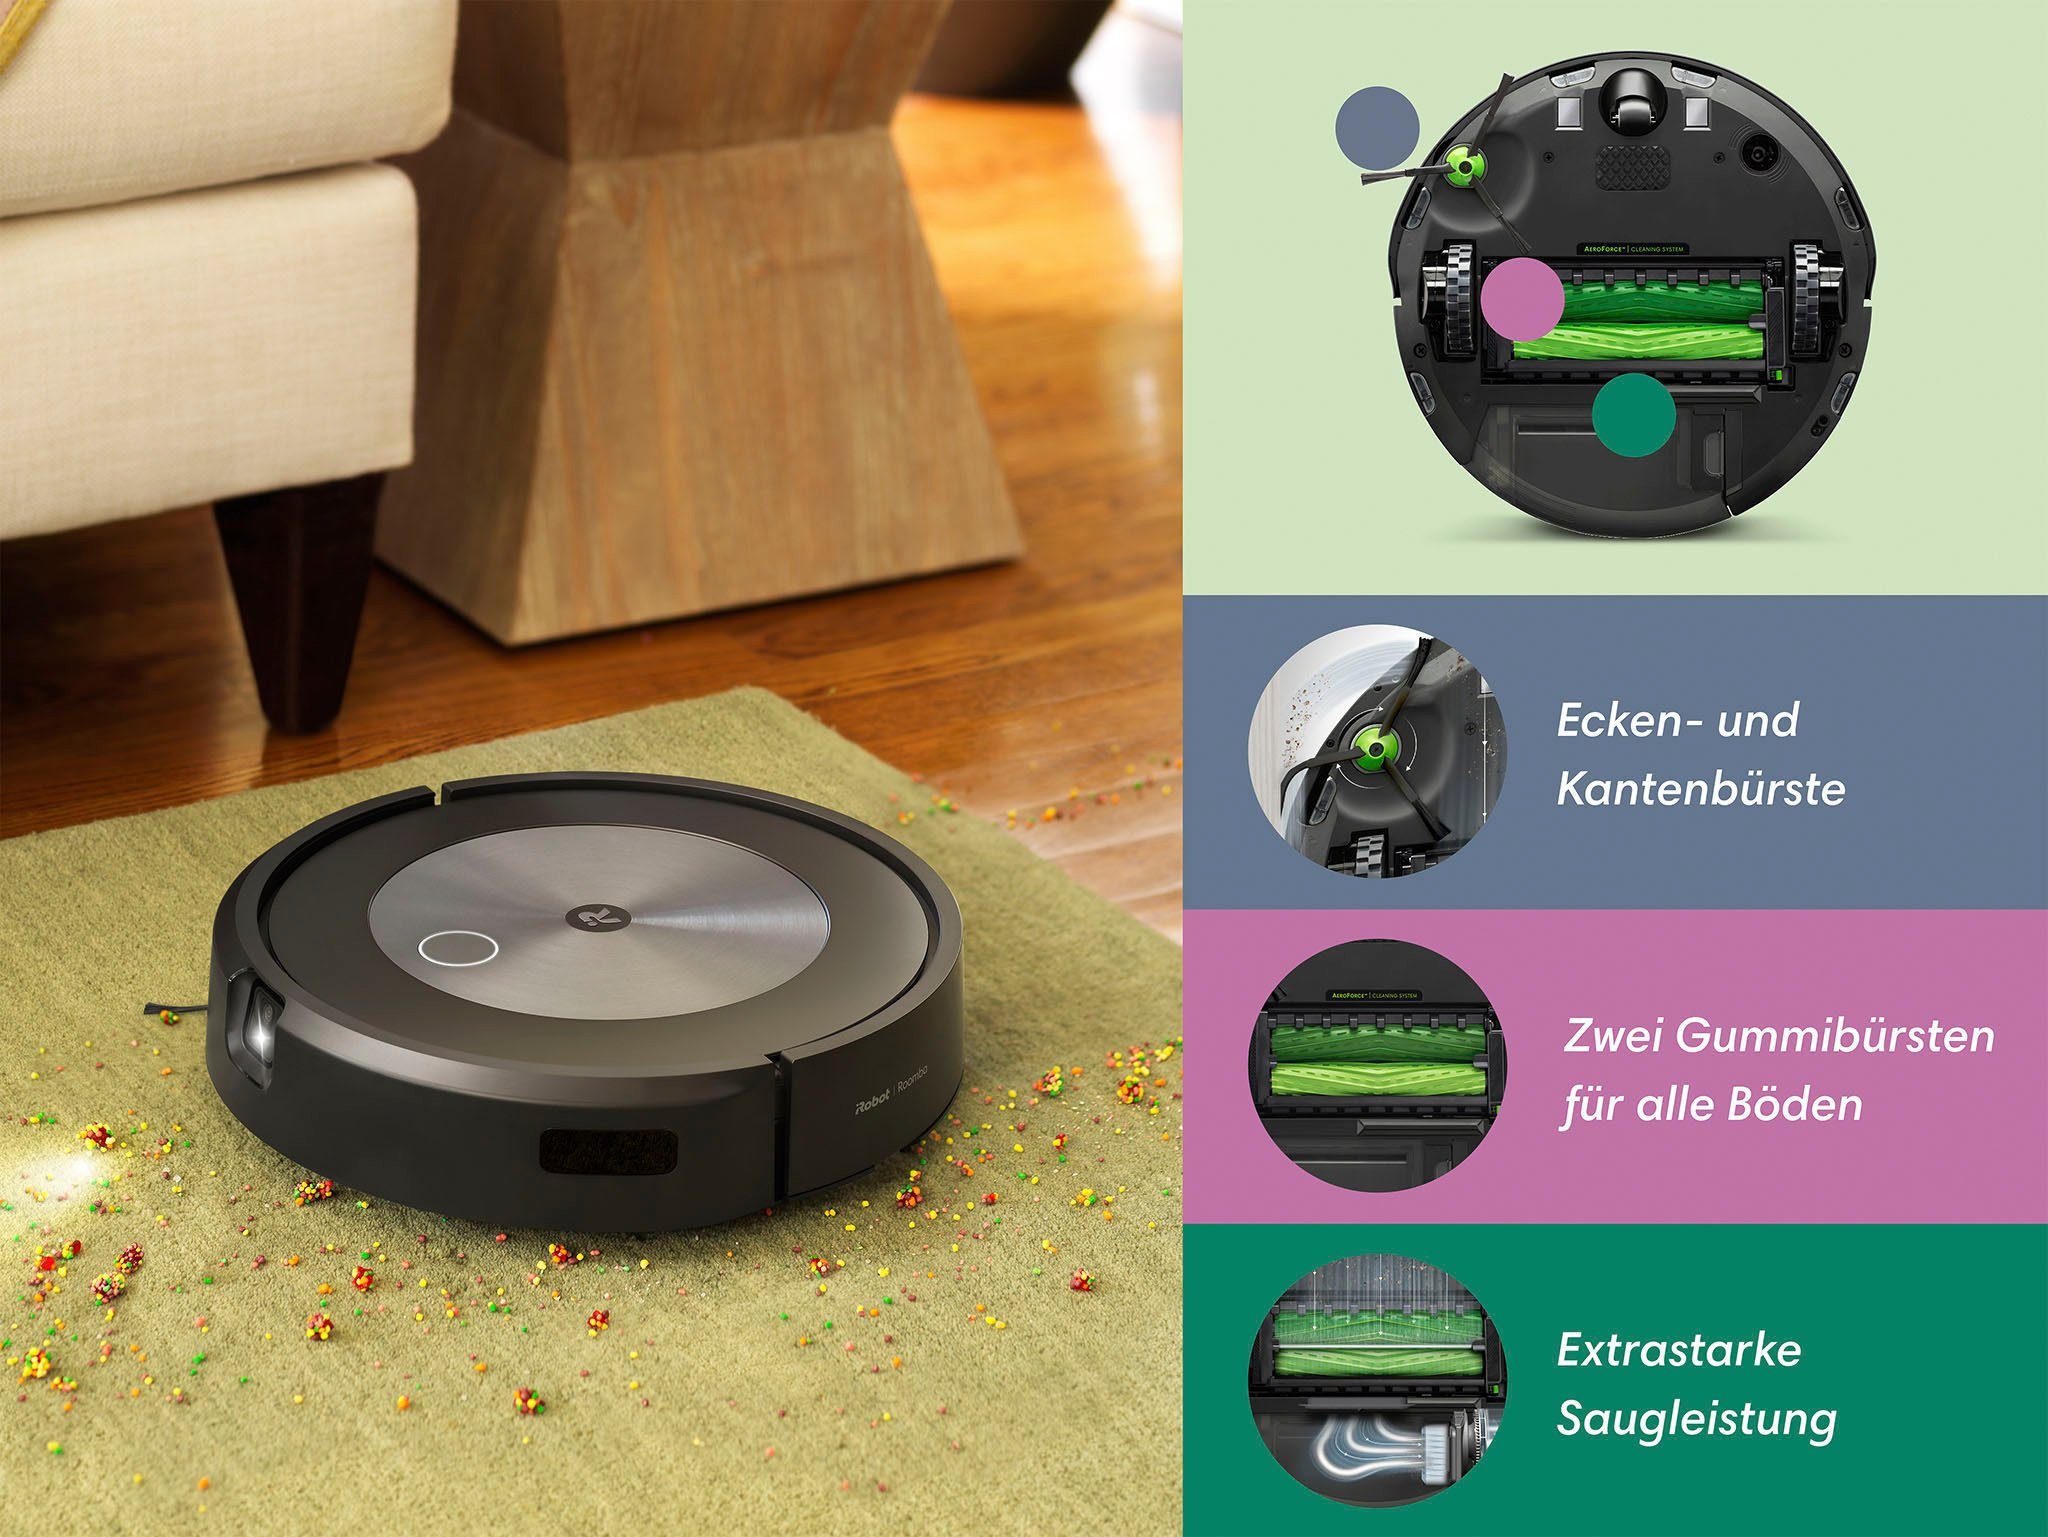 beutellos, Kartierung, j7 iRobot Roomba® WLAN-fähig, Saugroboter (j7158), Objekterkennung